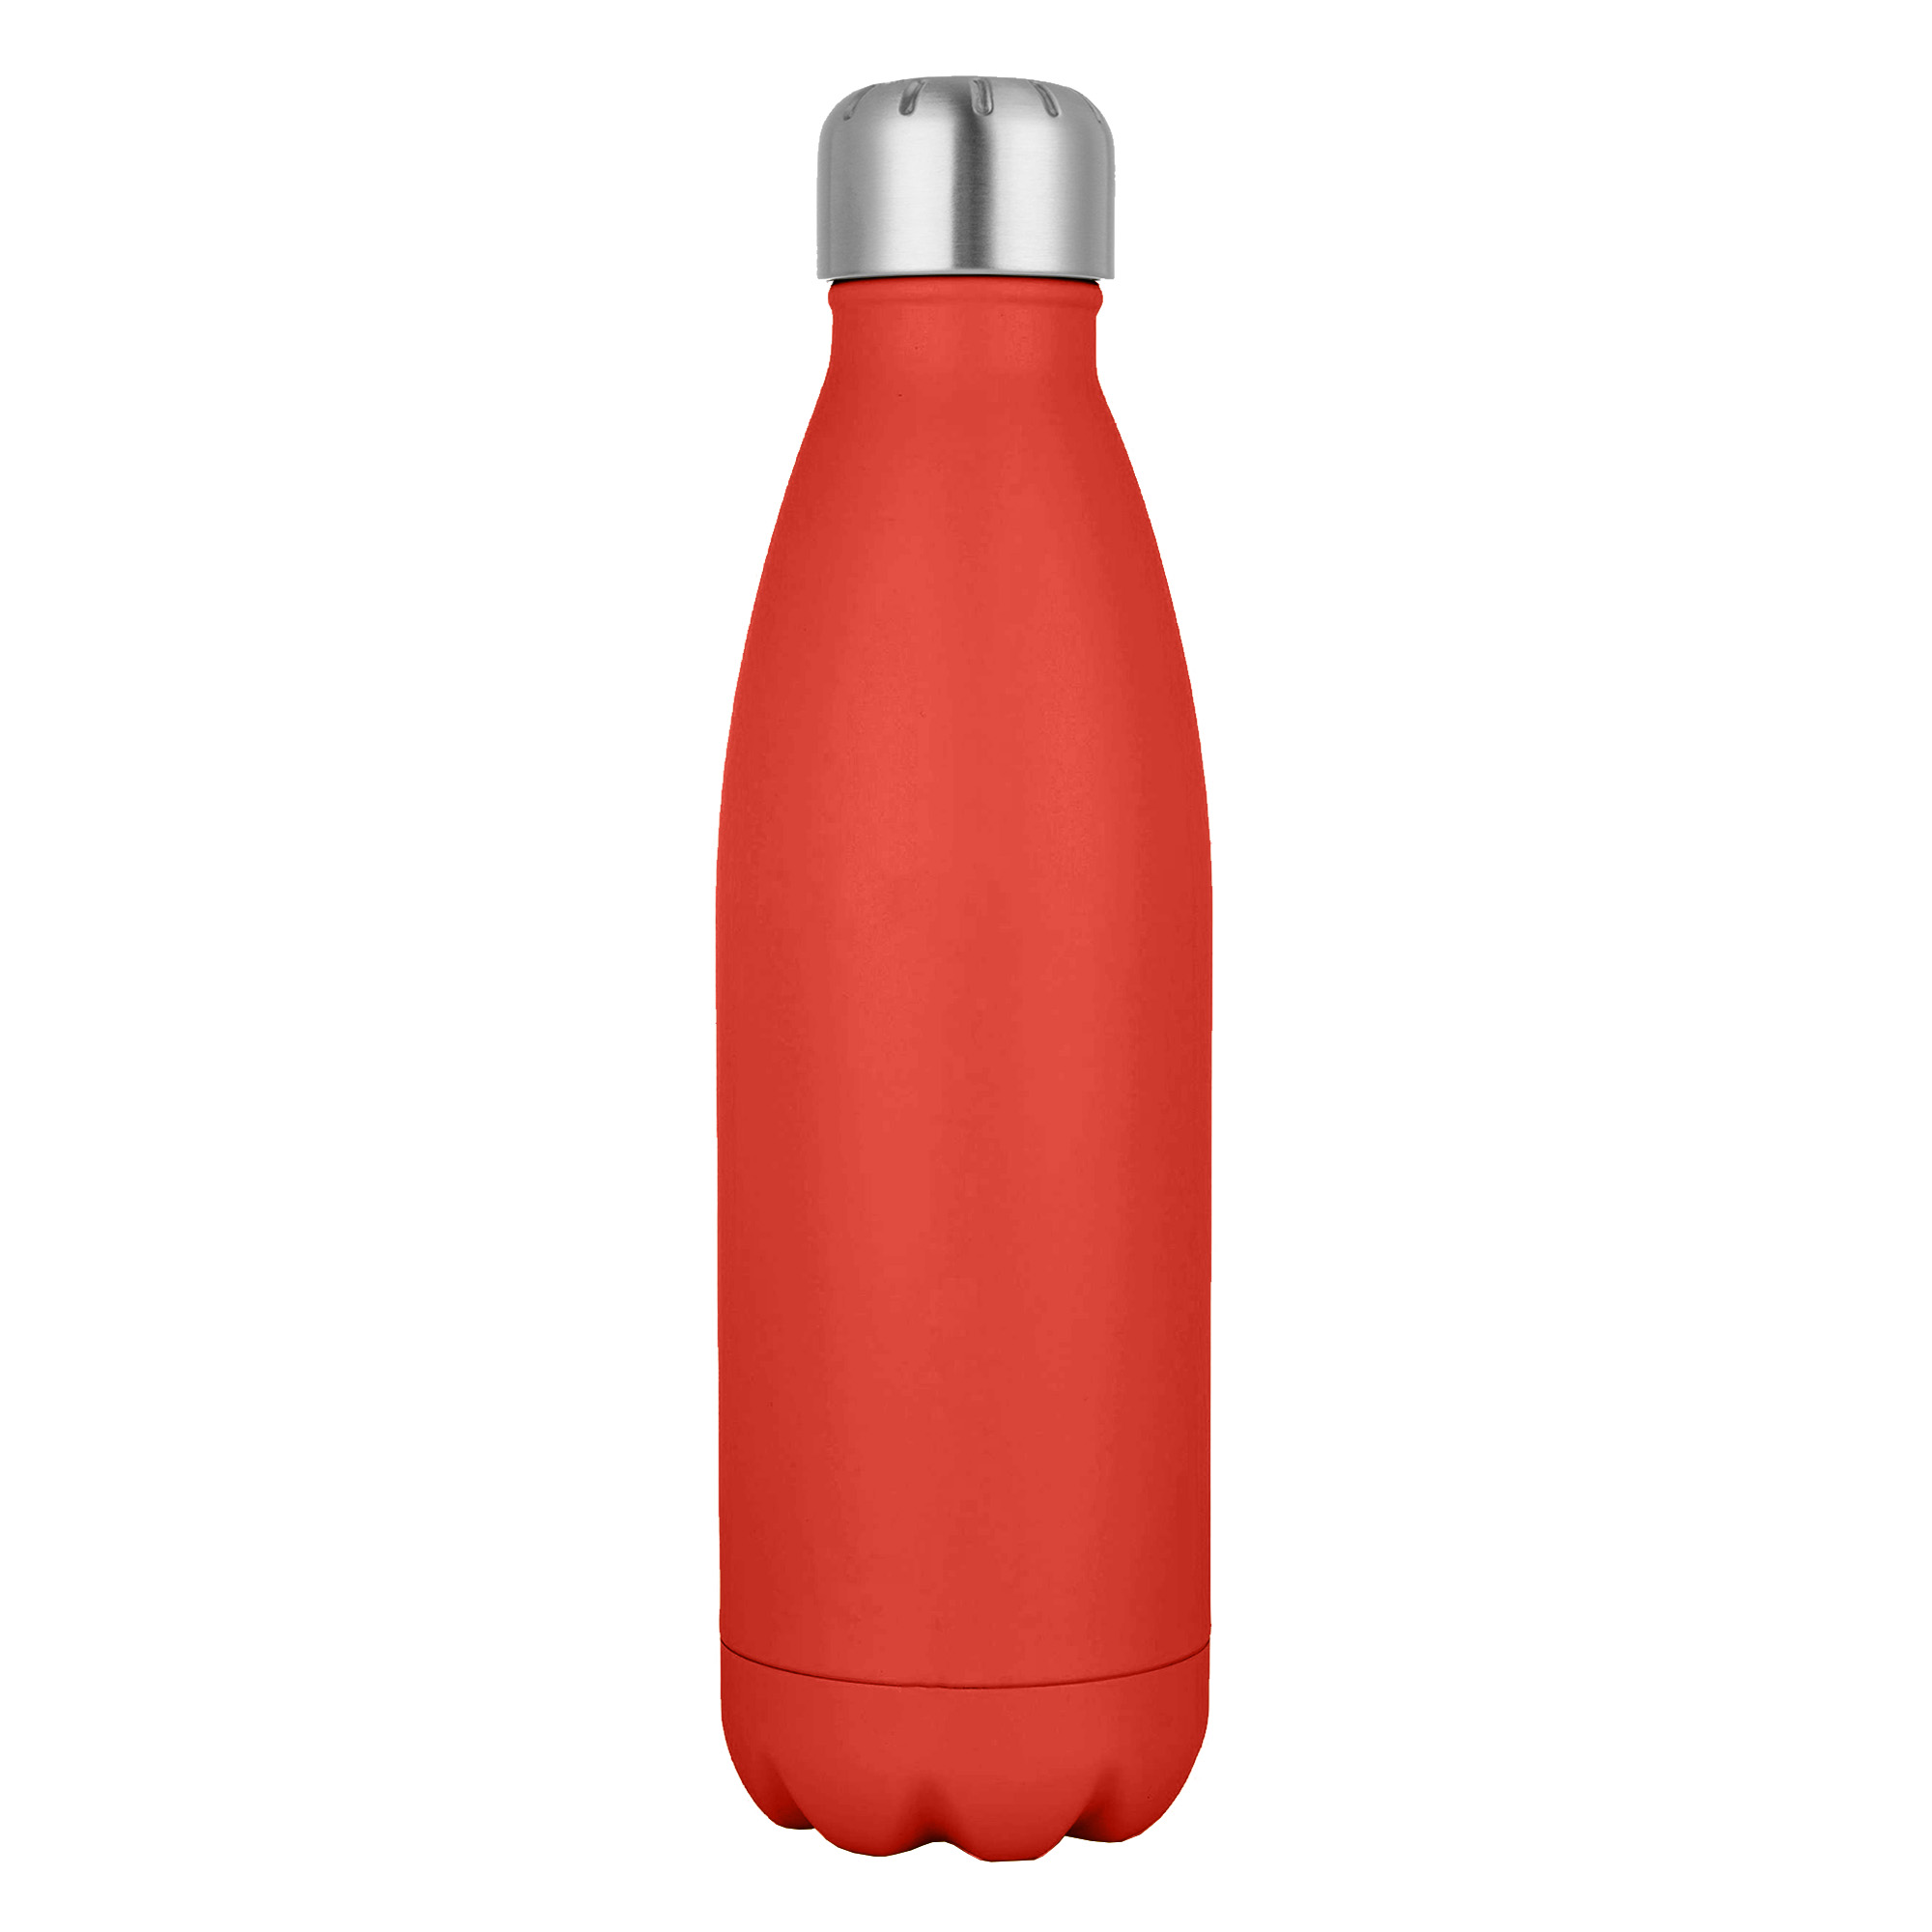 Bulk Custom Komo Matt Metal Red Drink Bottle Online in Perth Australia